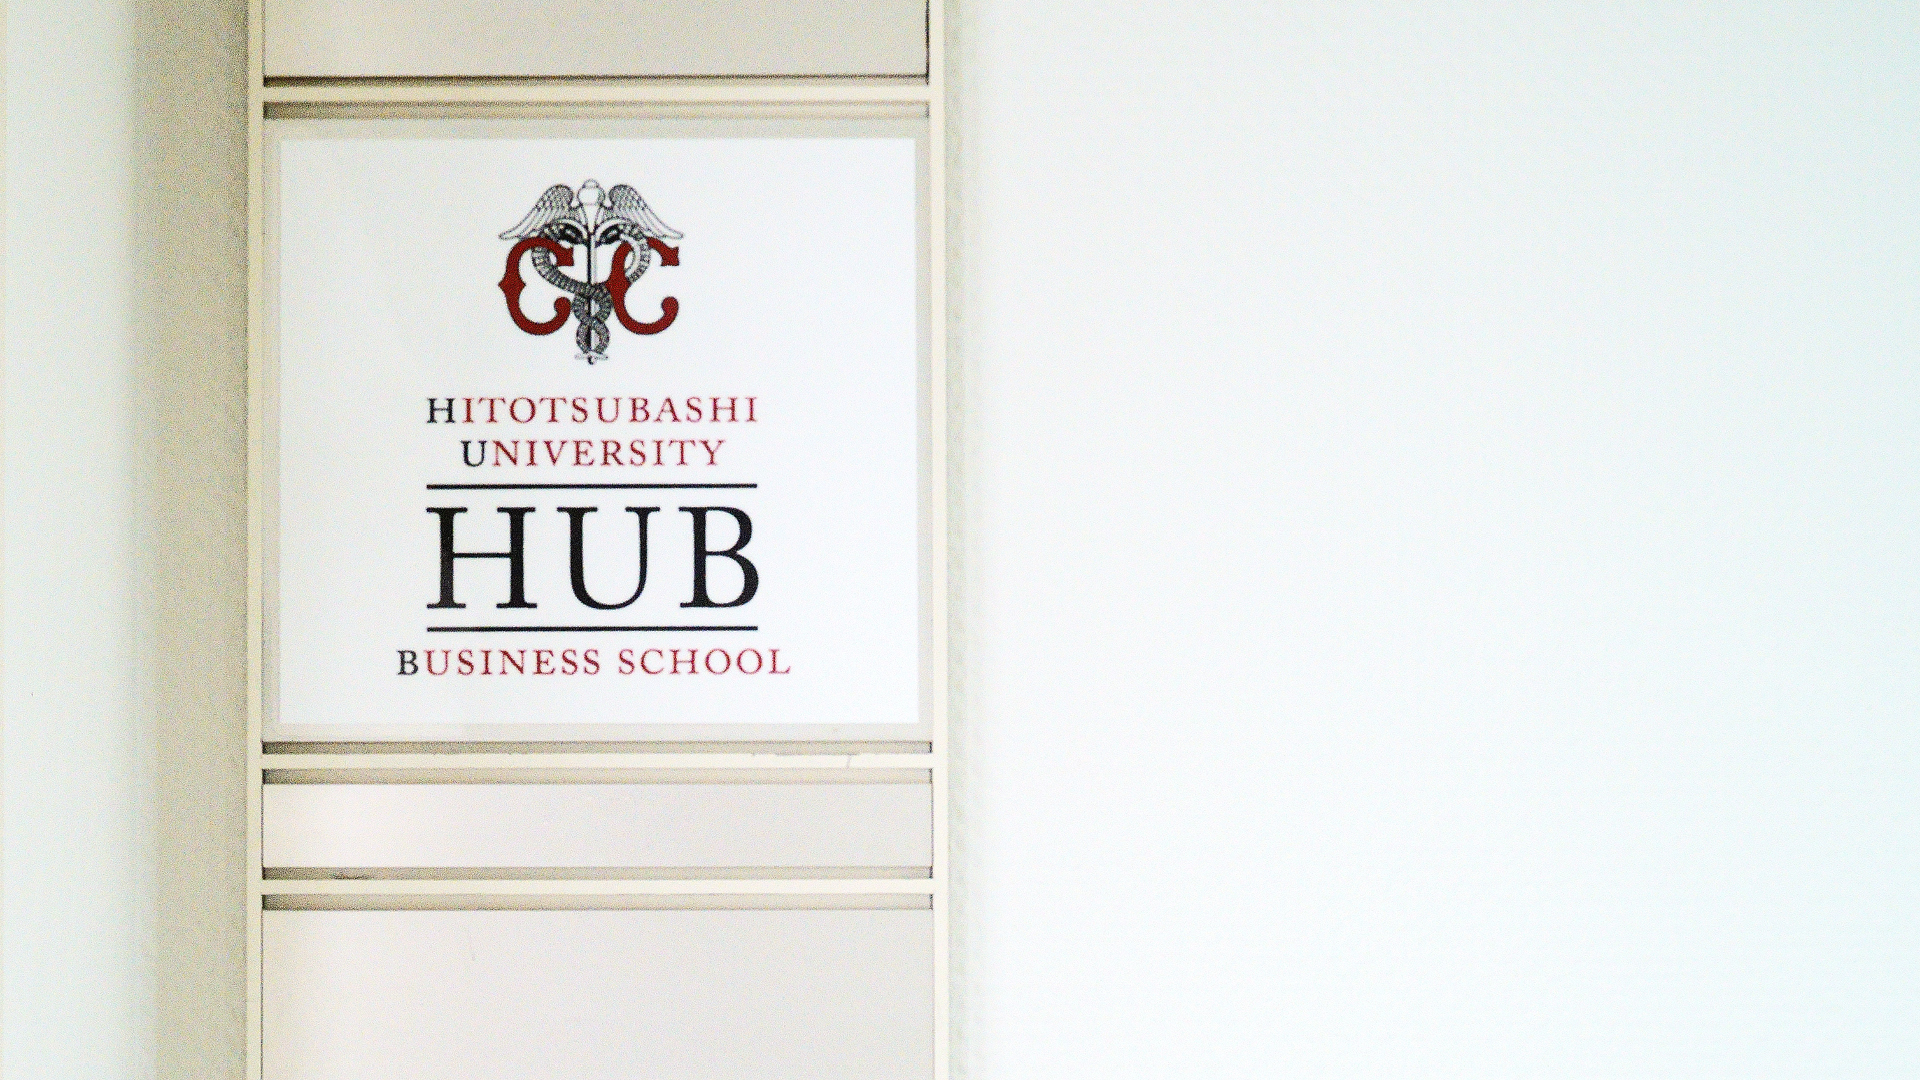 Hitotsubashi University, Chiyoda Campus Signboard Image